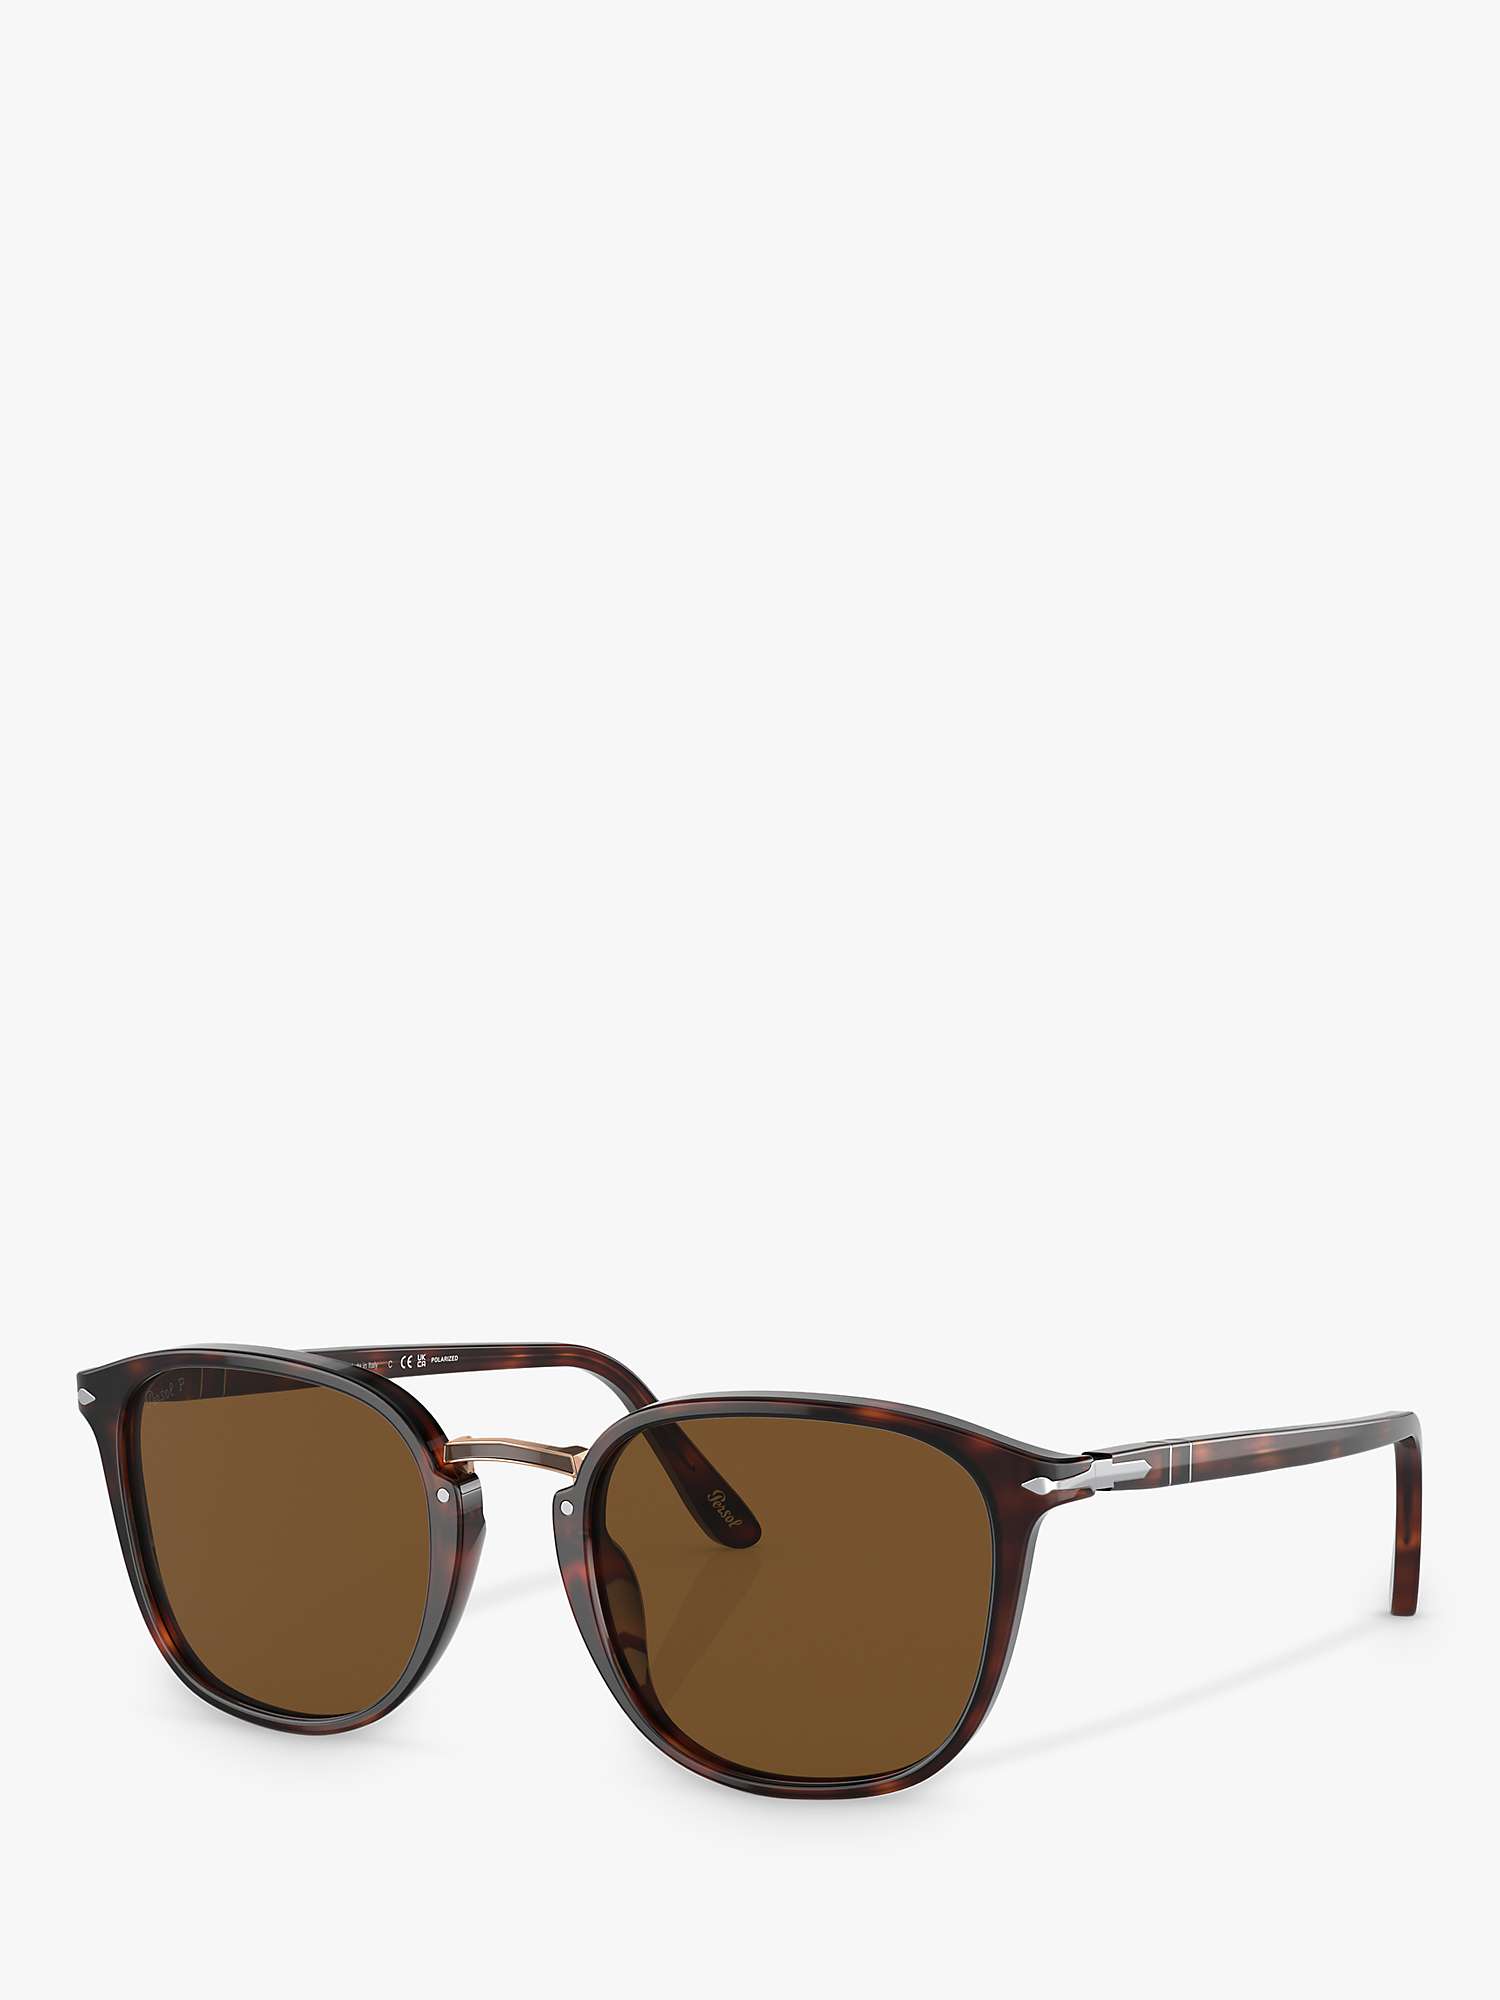 Buy Persol PO3186S Polarised Square Sunglasses Online at johnlewis.com